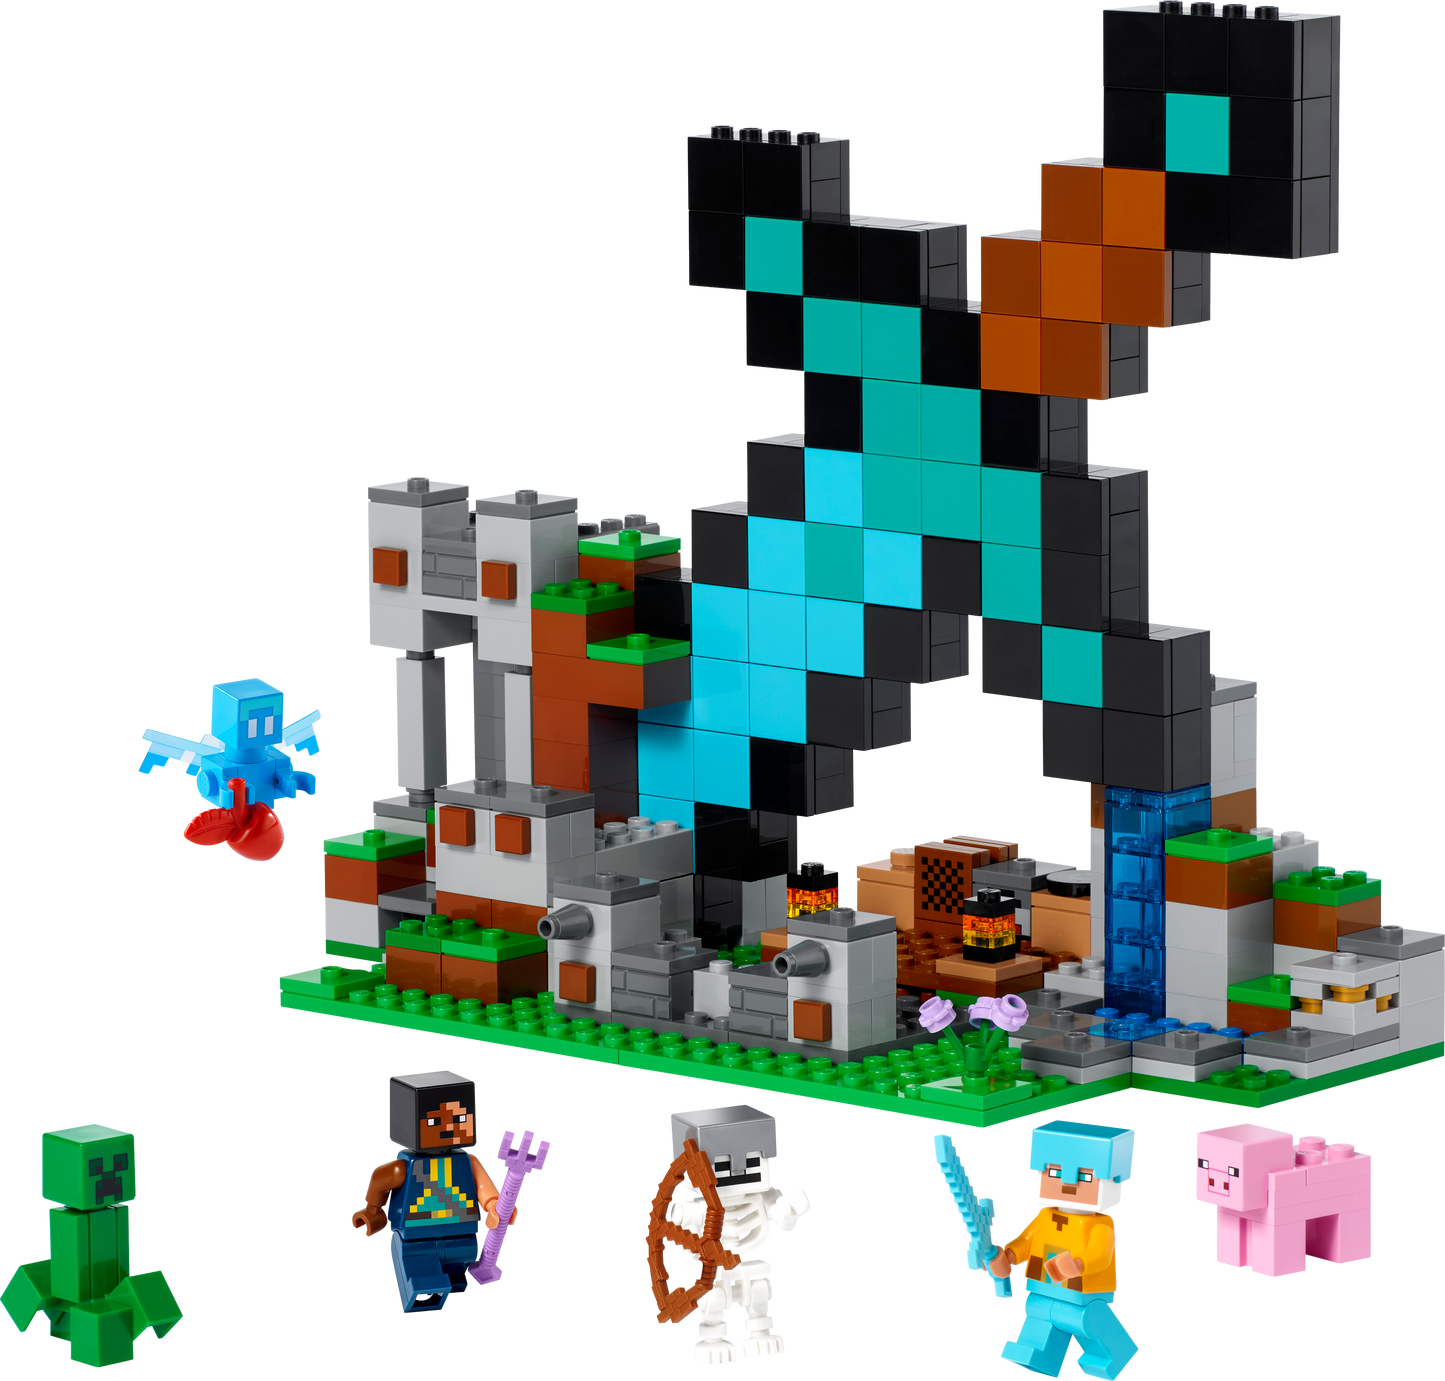 21244 LEGO Minecraft - L’avamposto della spada